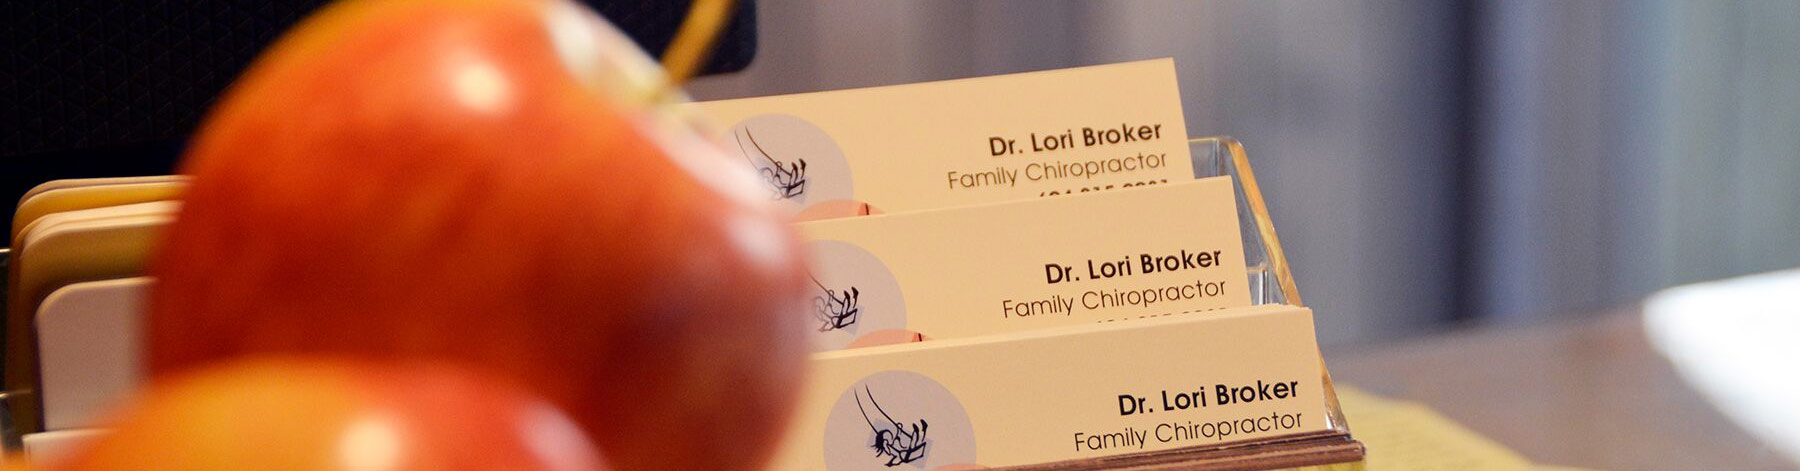 Lori Broker Squamish Family Chiropractor